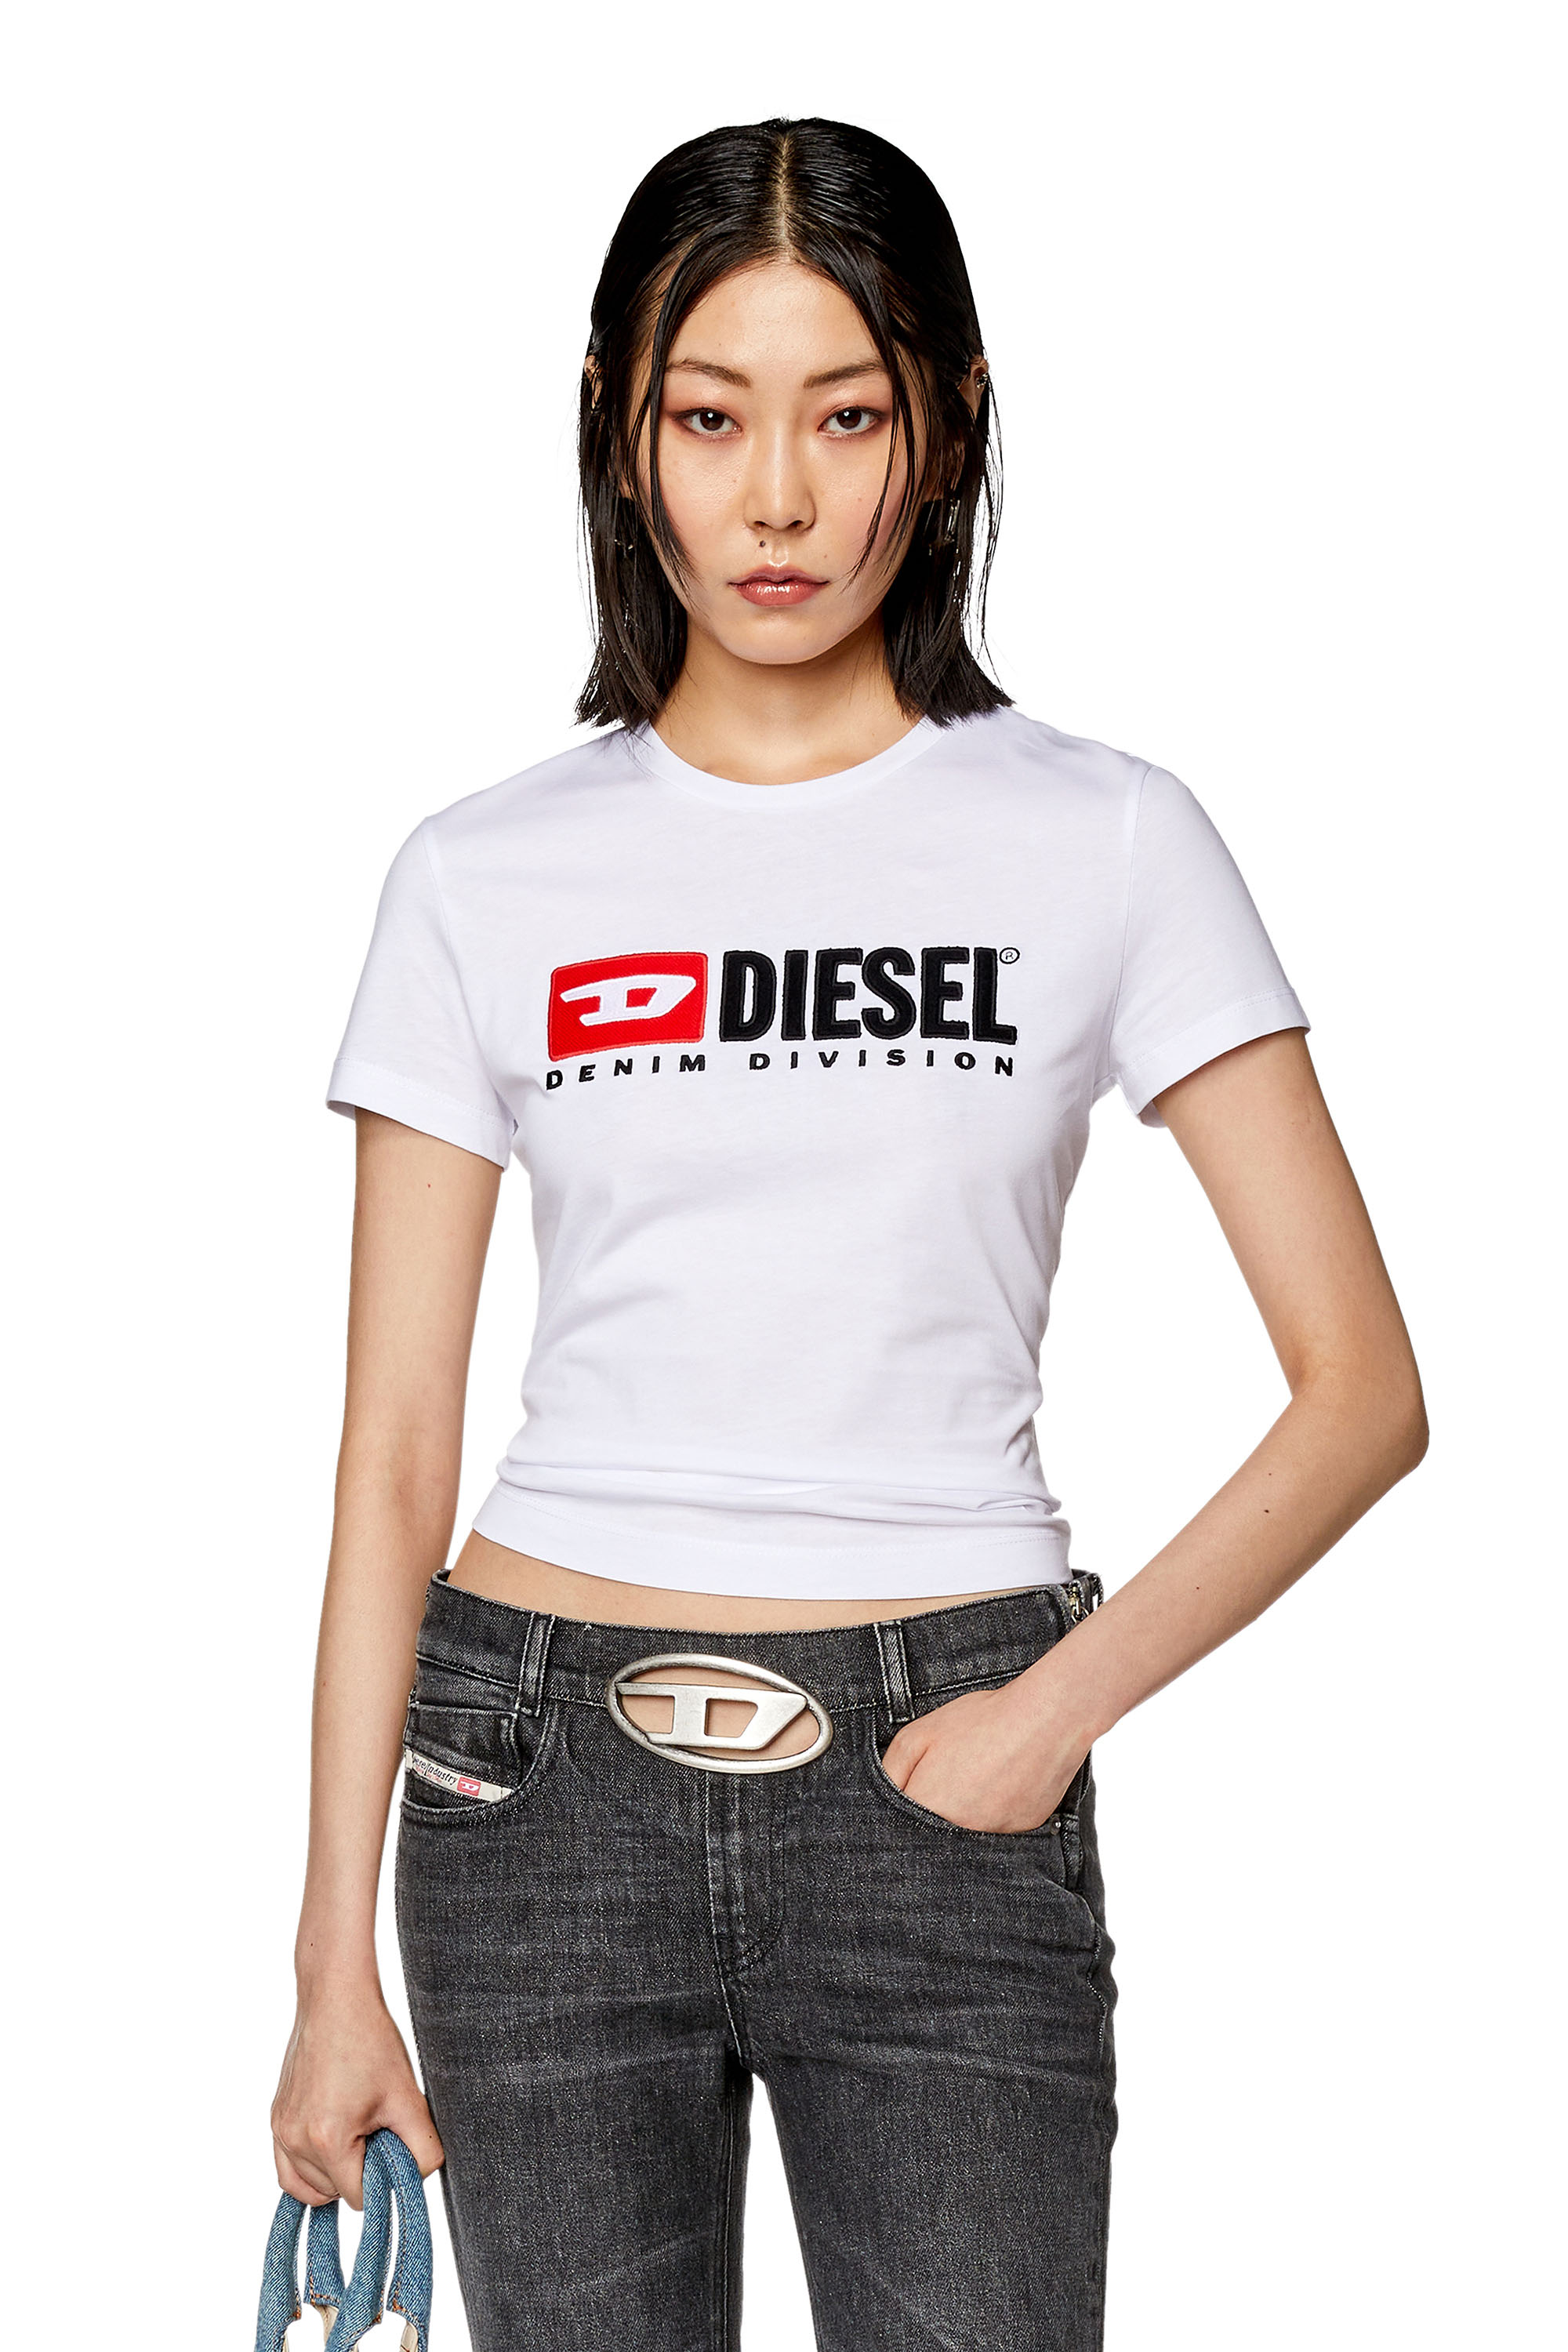 Diesel - T-SLI-DIV, White - Image 1